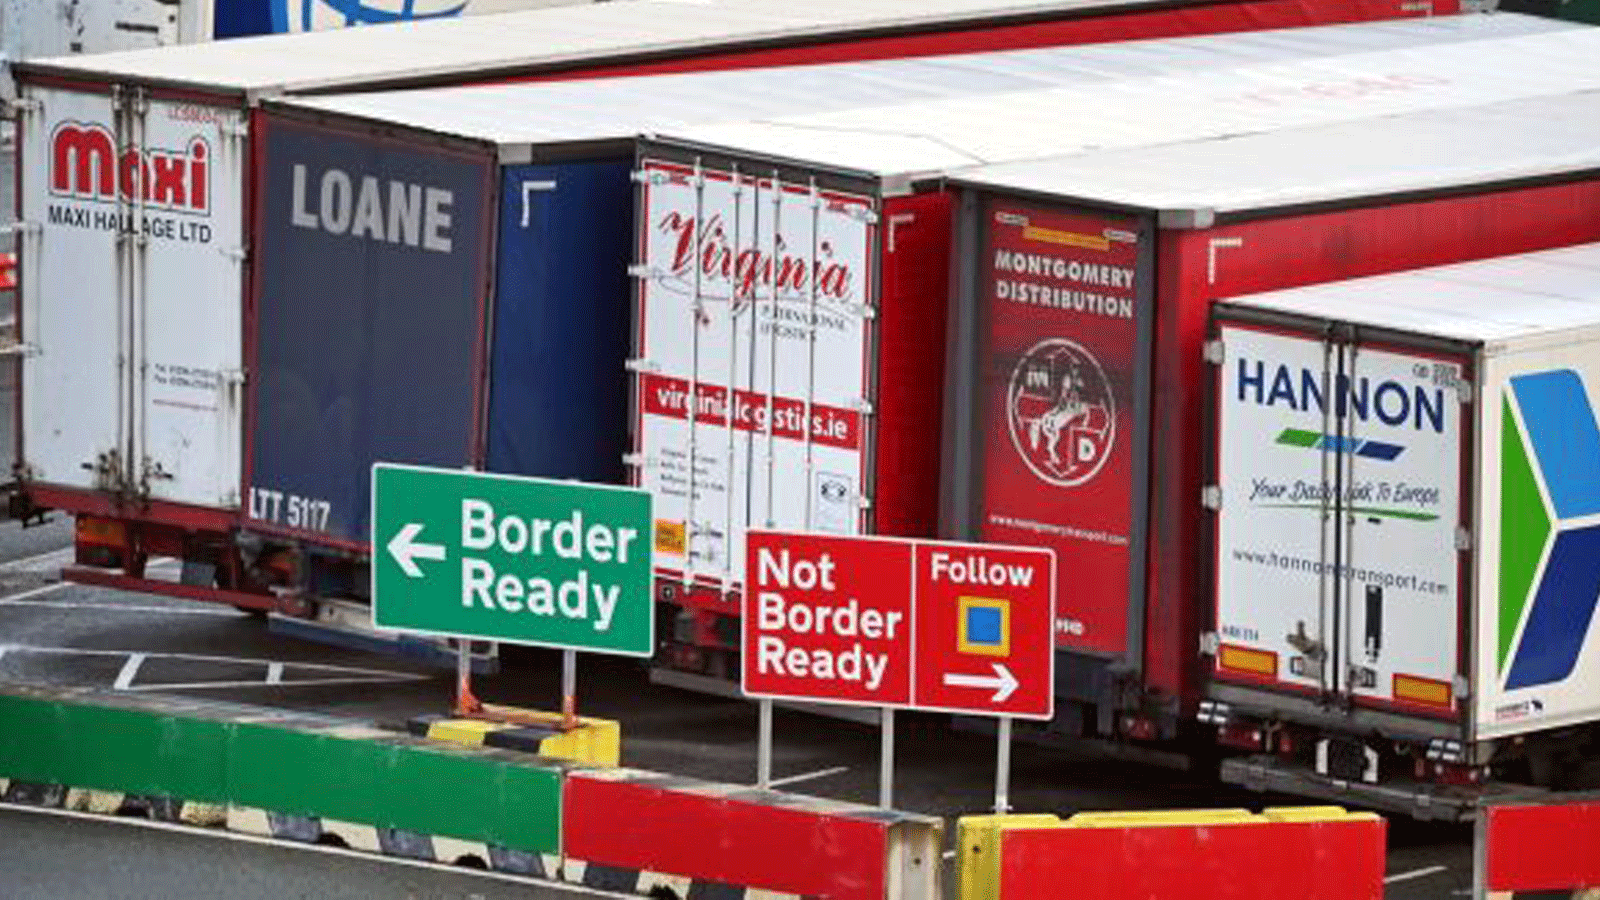 لافتات في ميناء هوليهيد في شمال ويلز تشير إلى الاتجاه الذي يجب أن تتبعه المركبات اعتماداً على الأوراق ذات الصلة للعبور إلى إيرلندا. 